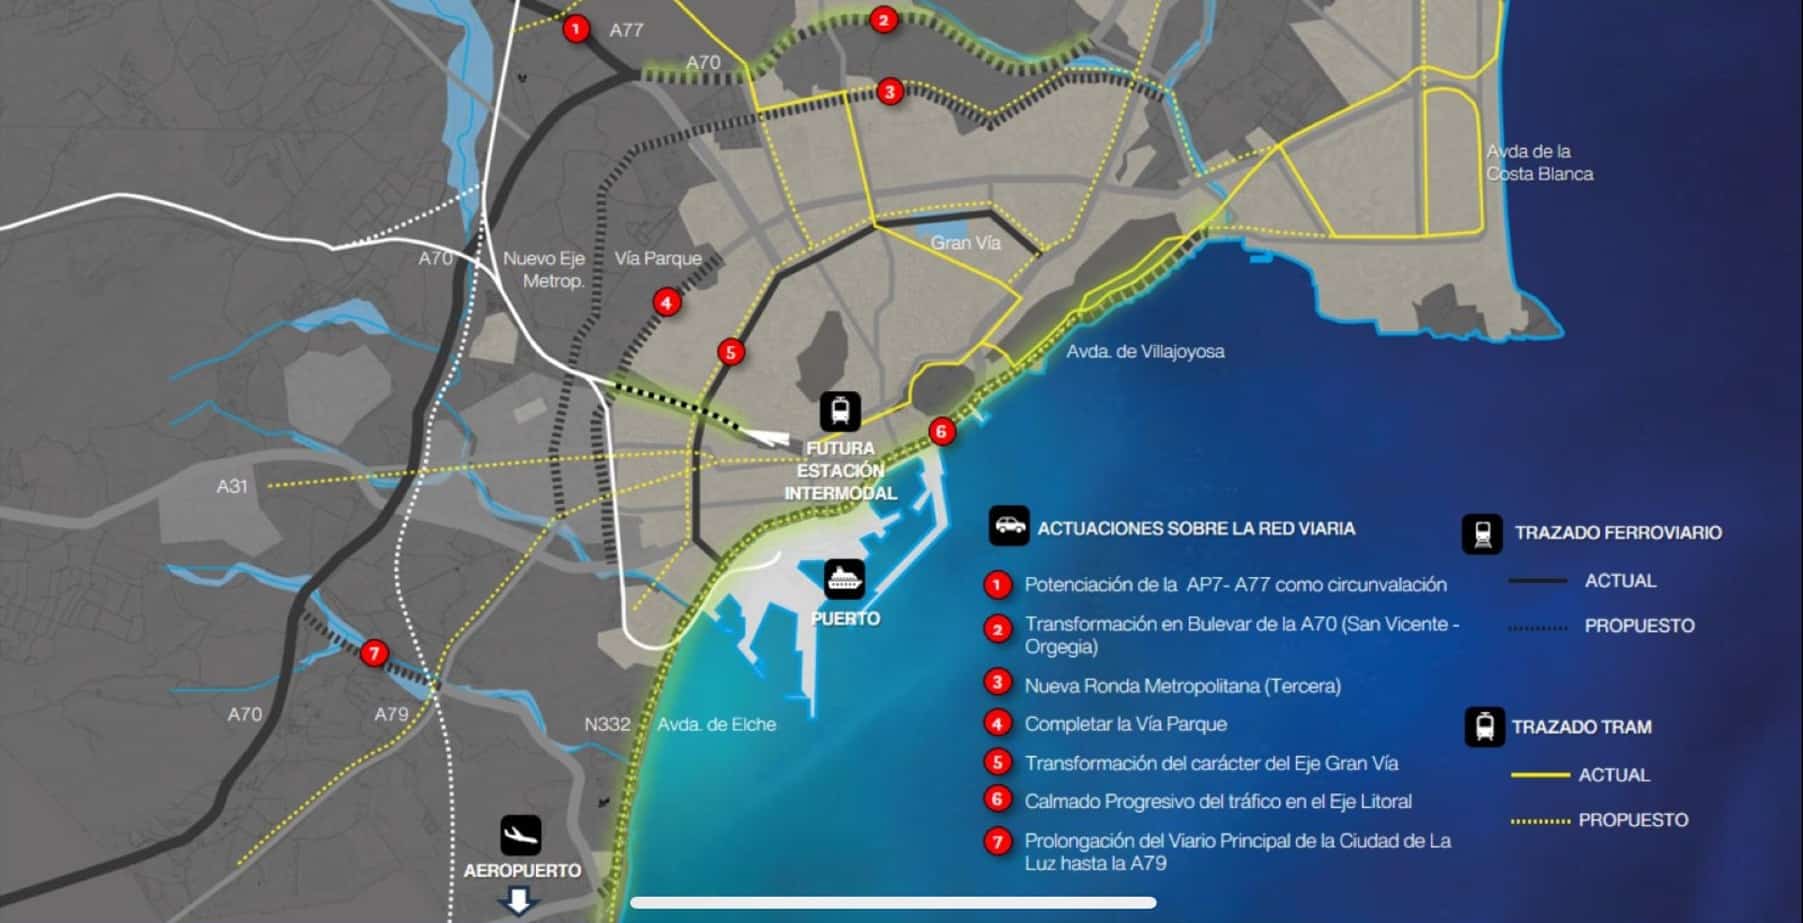 El plan “Alicante 4D” rediseña la ciudad para un futuro más sostenible